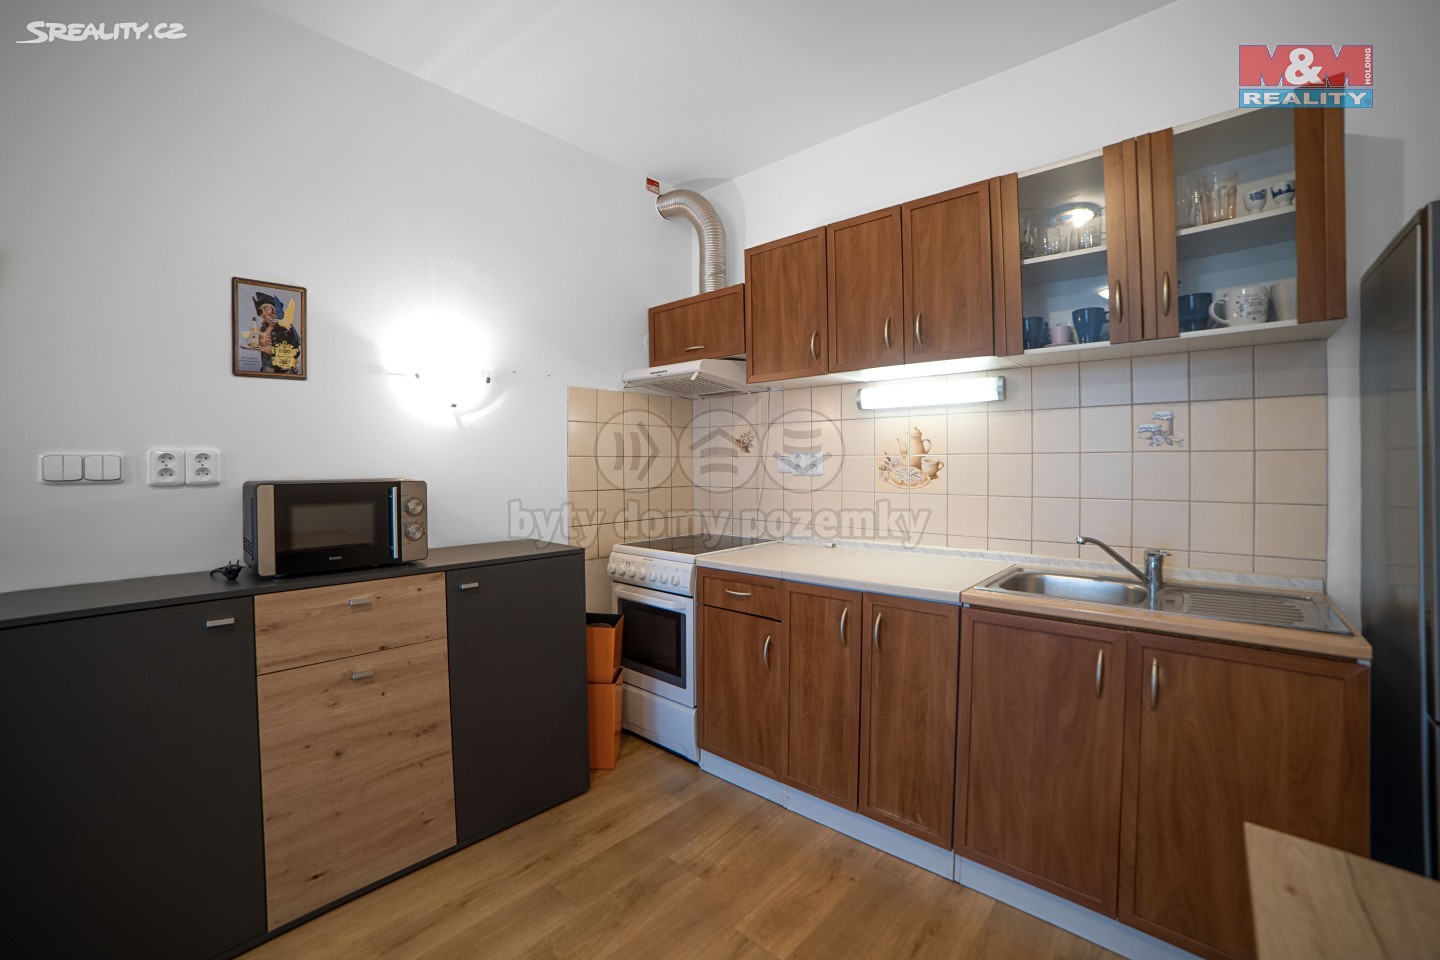 Prodej bytu 2+kk 55 m², Oslavany, okres Brno-venkov